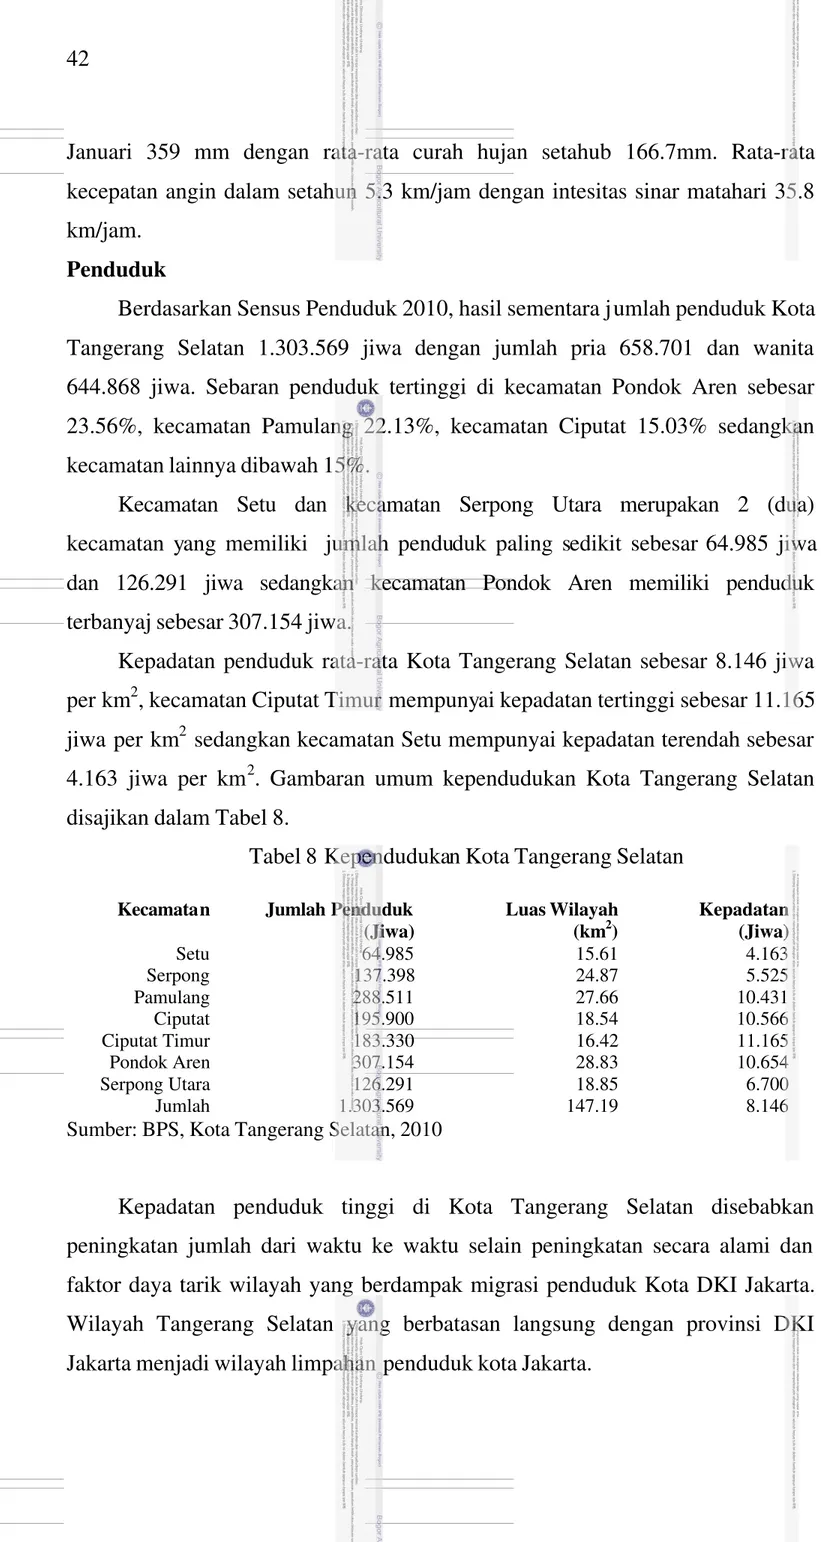 Tabel 8 Kependudukan Kota Tangerang Selatan